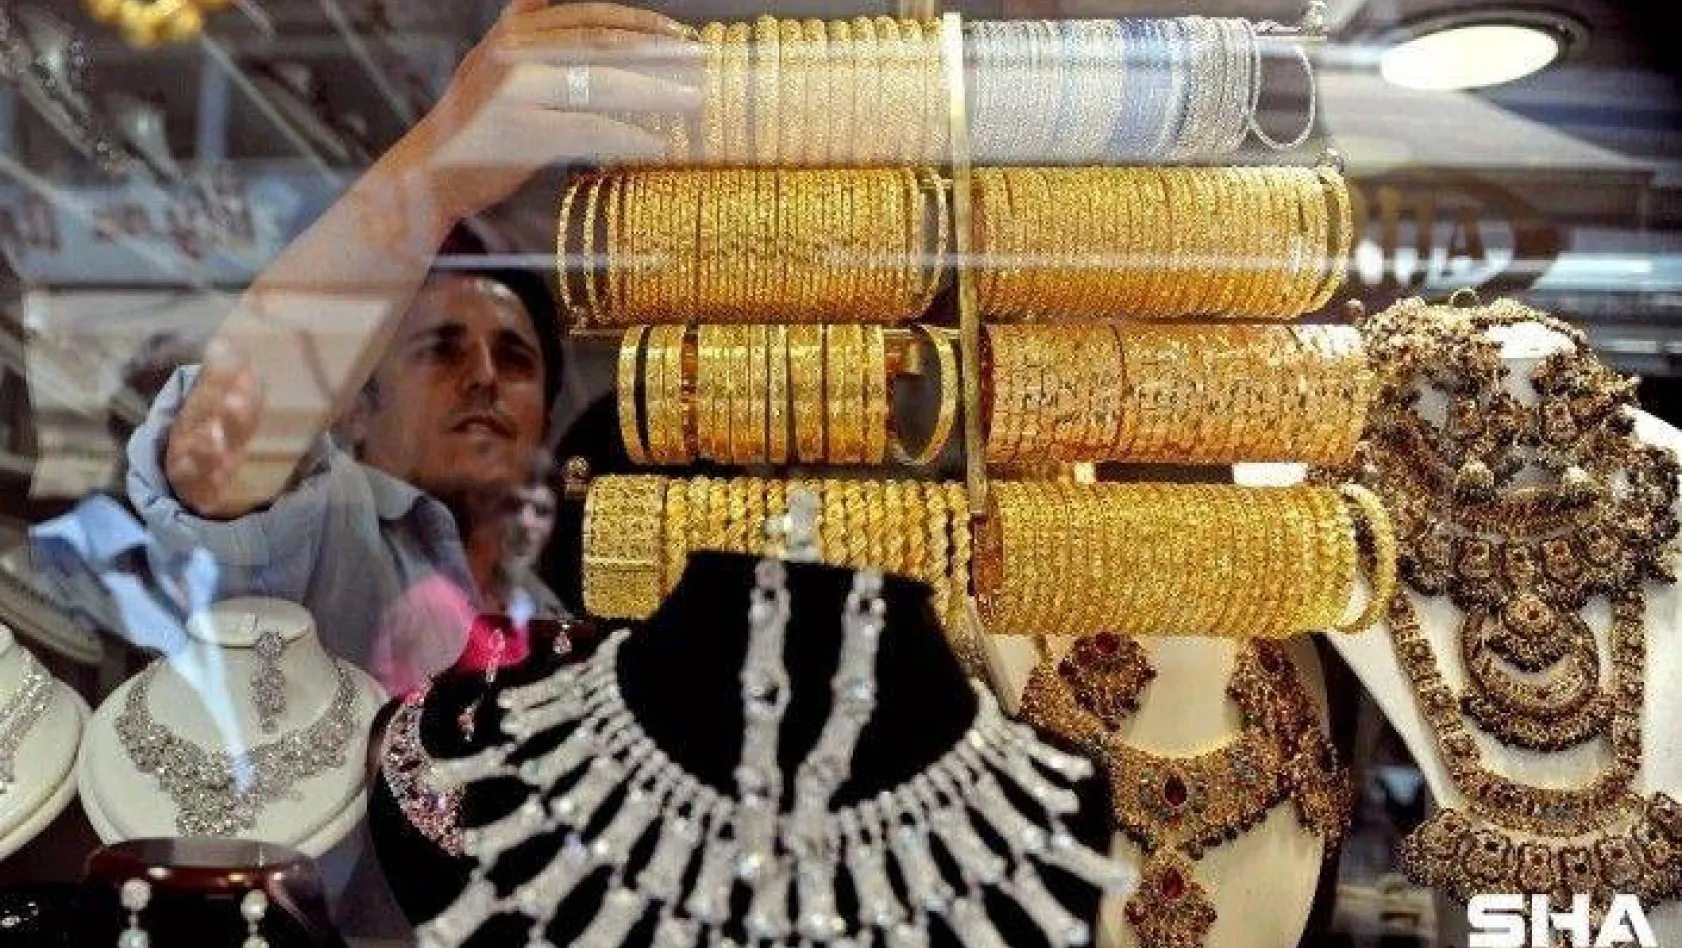 24 ayar külçe altının gram satış fiyatı 500,80 lira oldu